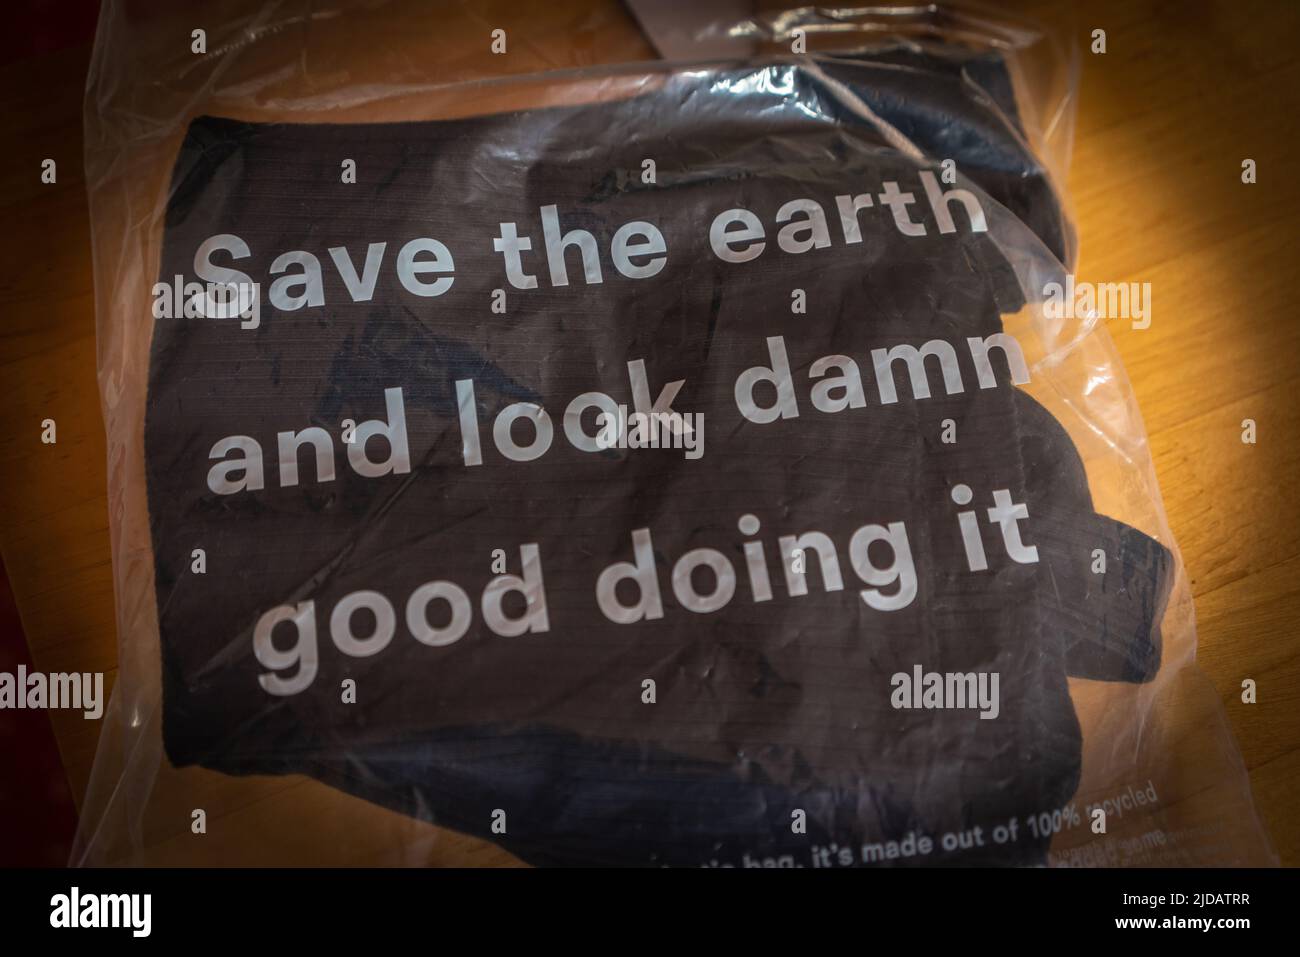 Vêtements écologiques durables fabriqués par Reformation, un détaillant de mode américain, emballage « Save the Earth and look damn Good Doing IT » Banque D'Images